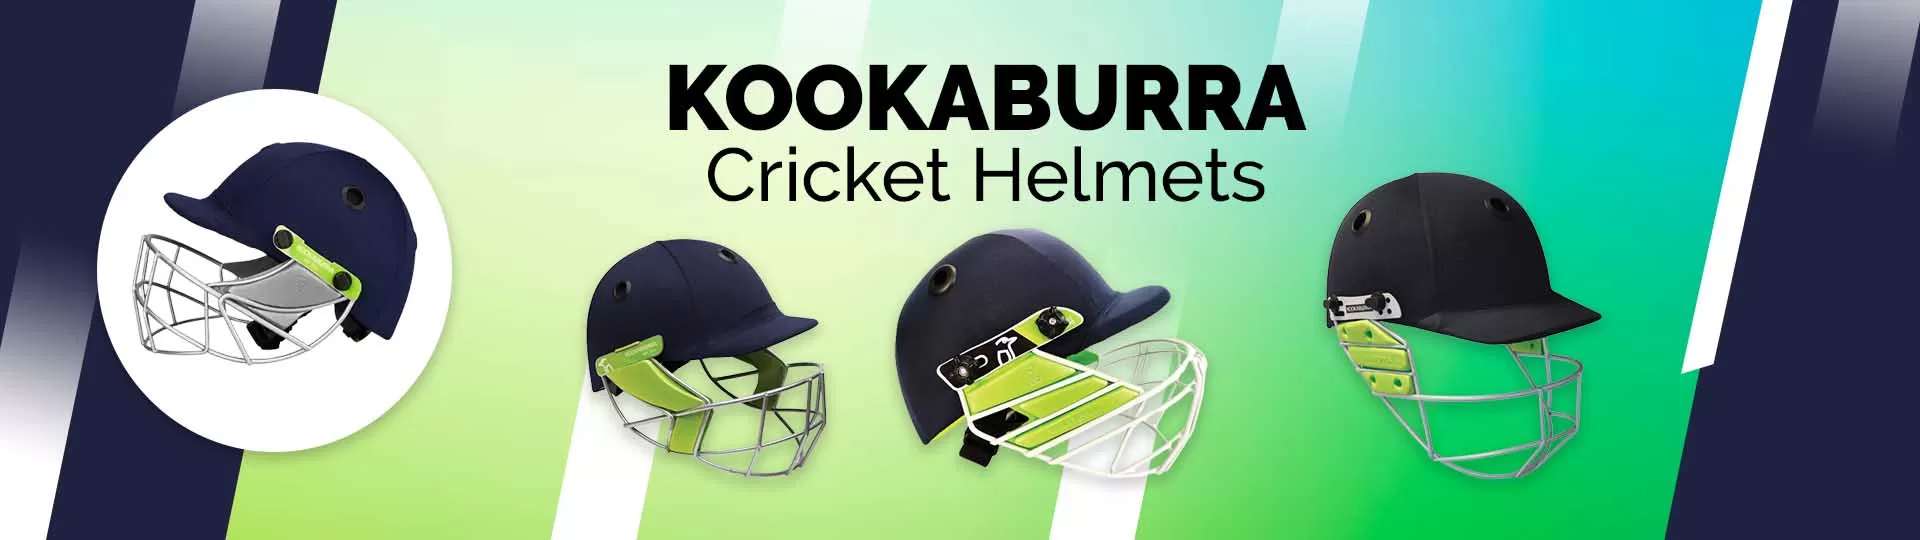 Kookaburra Cricket Helmets